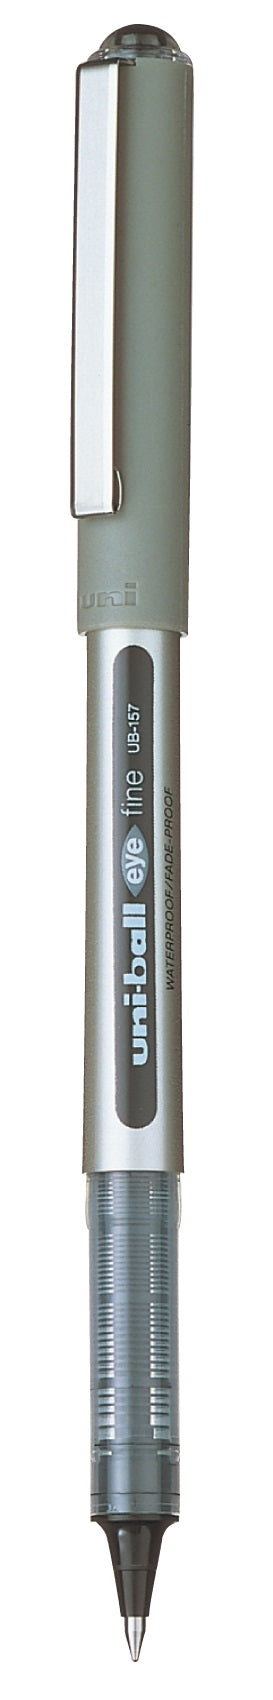 Uni ball UB 157 eye Fine Roller pen Black